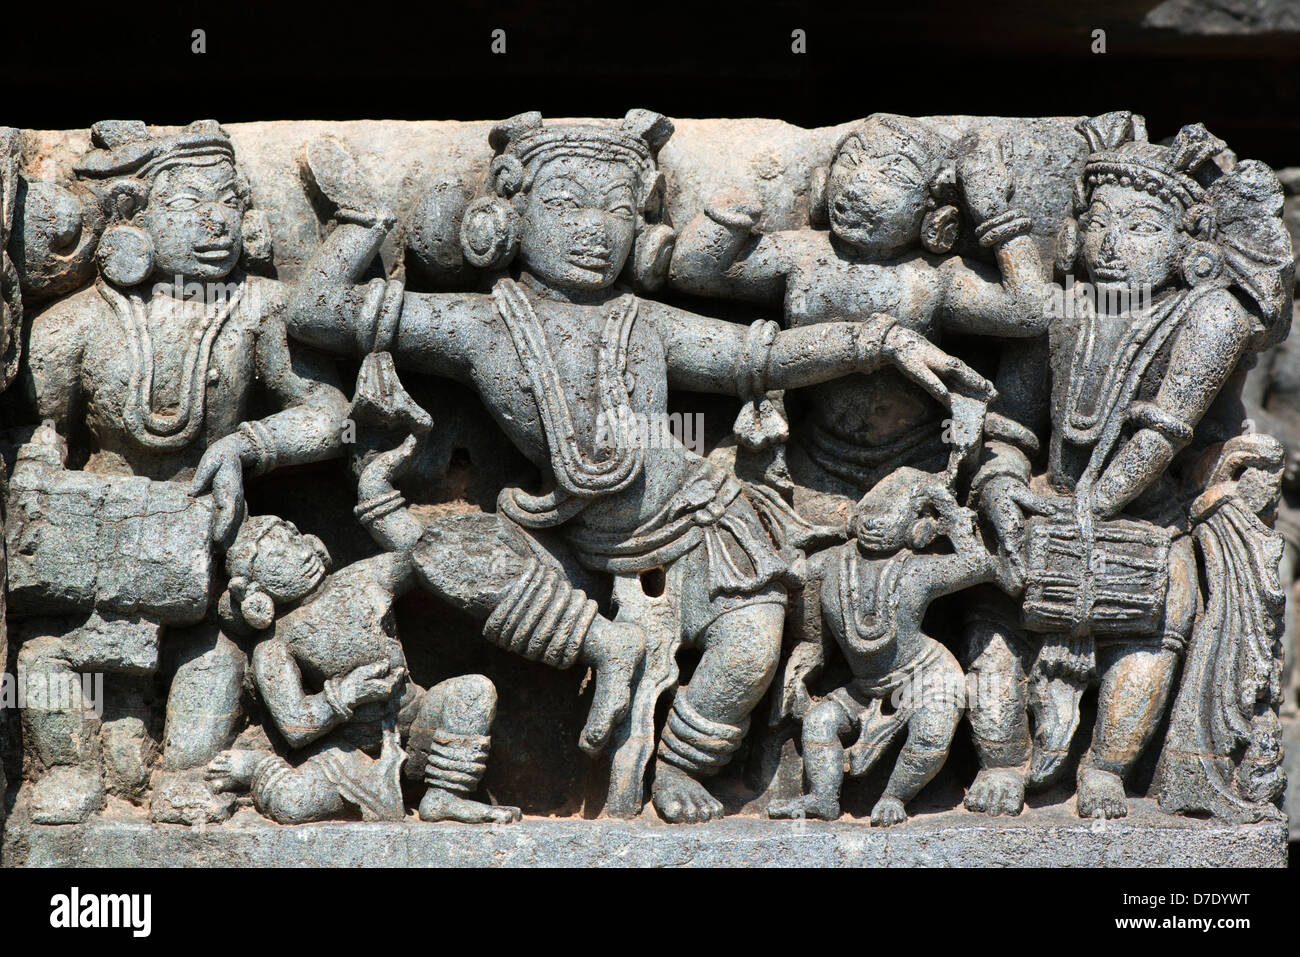 Exemples de sculpture Hoysala magistrale ornent l'Hindu Temple Hoysaleswara à Halebidu, près de Hassan, Karnataka, Inde Banque D'Images